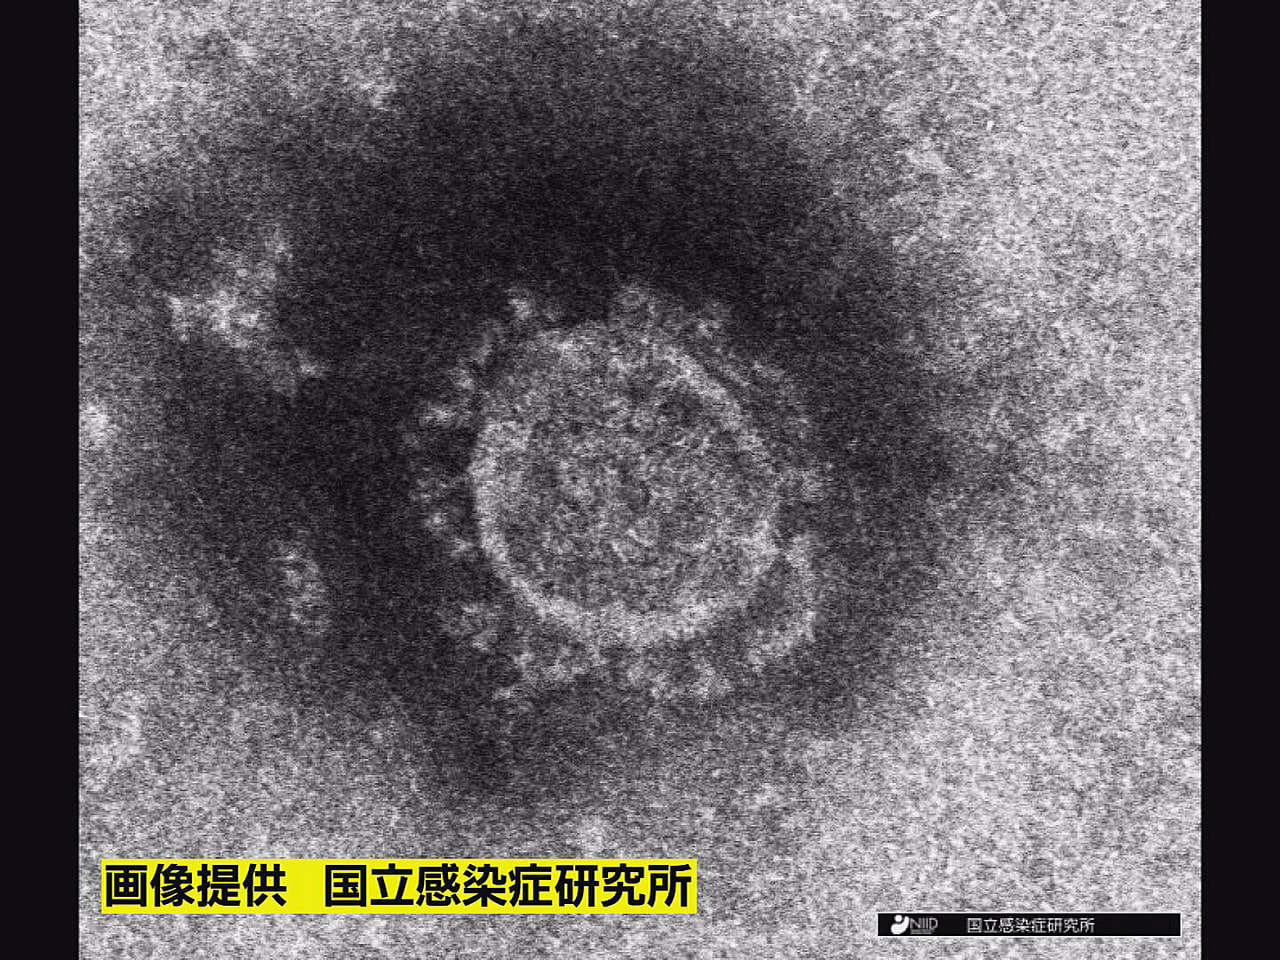 岐阜県は２日、新型コロナウイルスの新規感染者が２３４人確認されたと発表しました。...